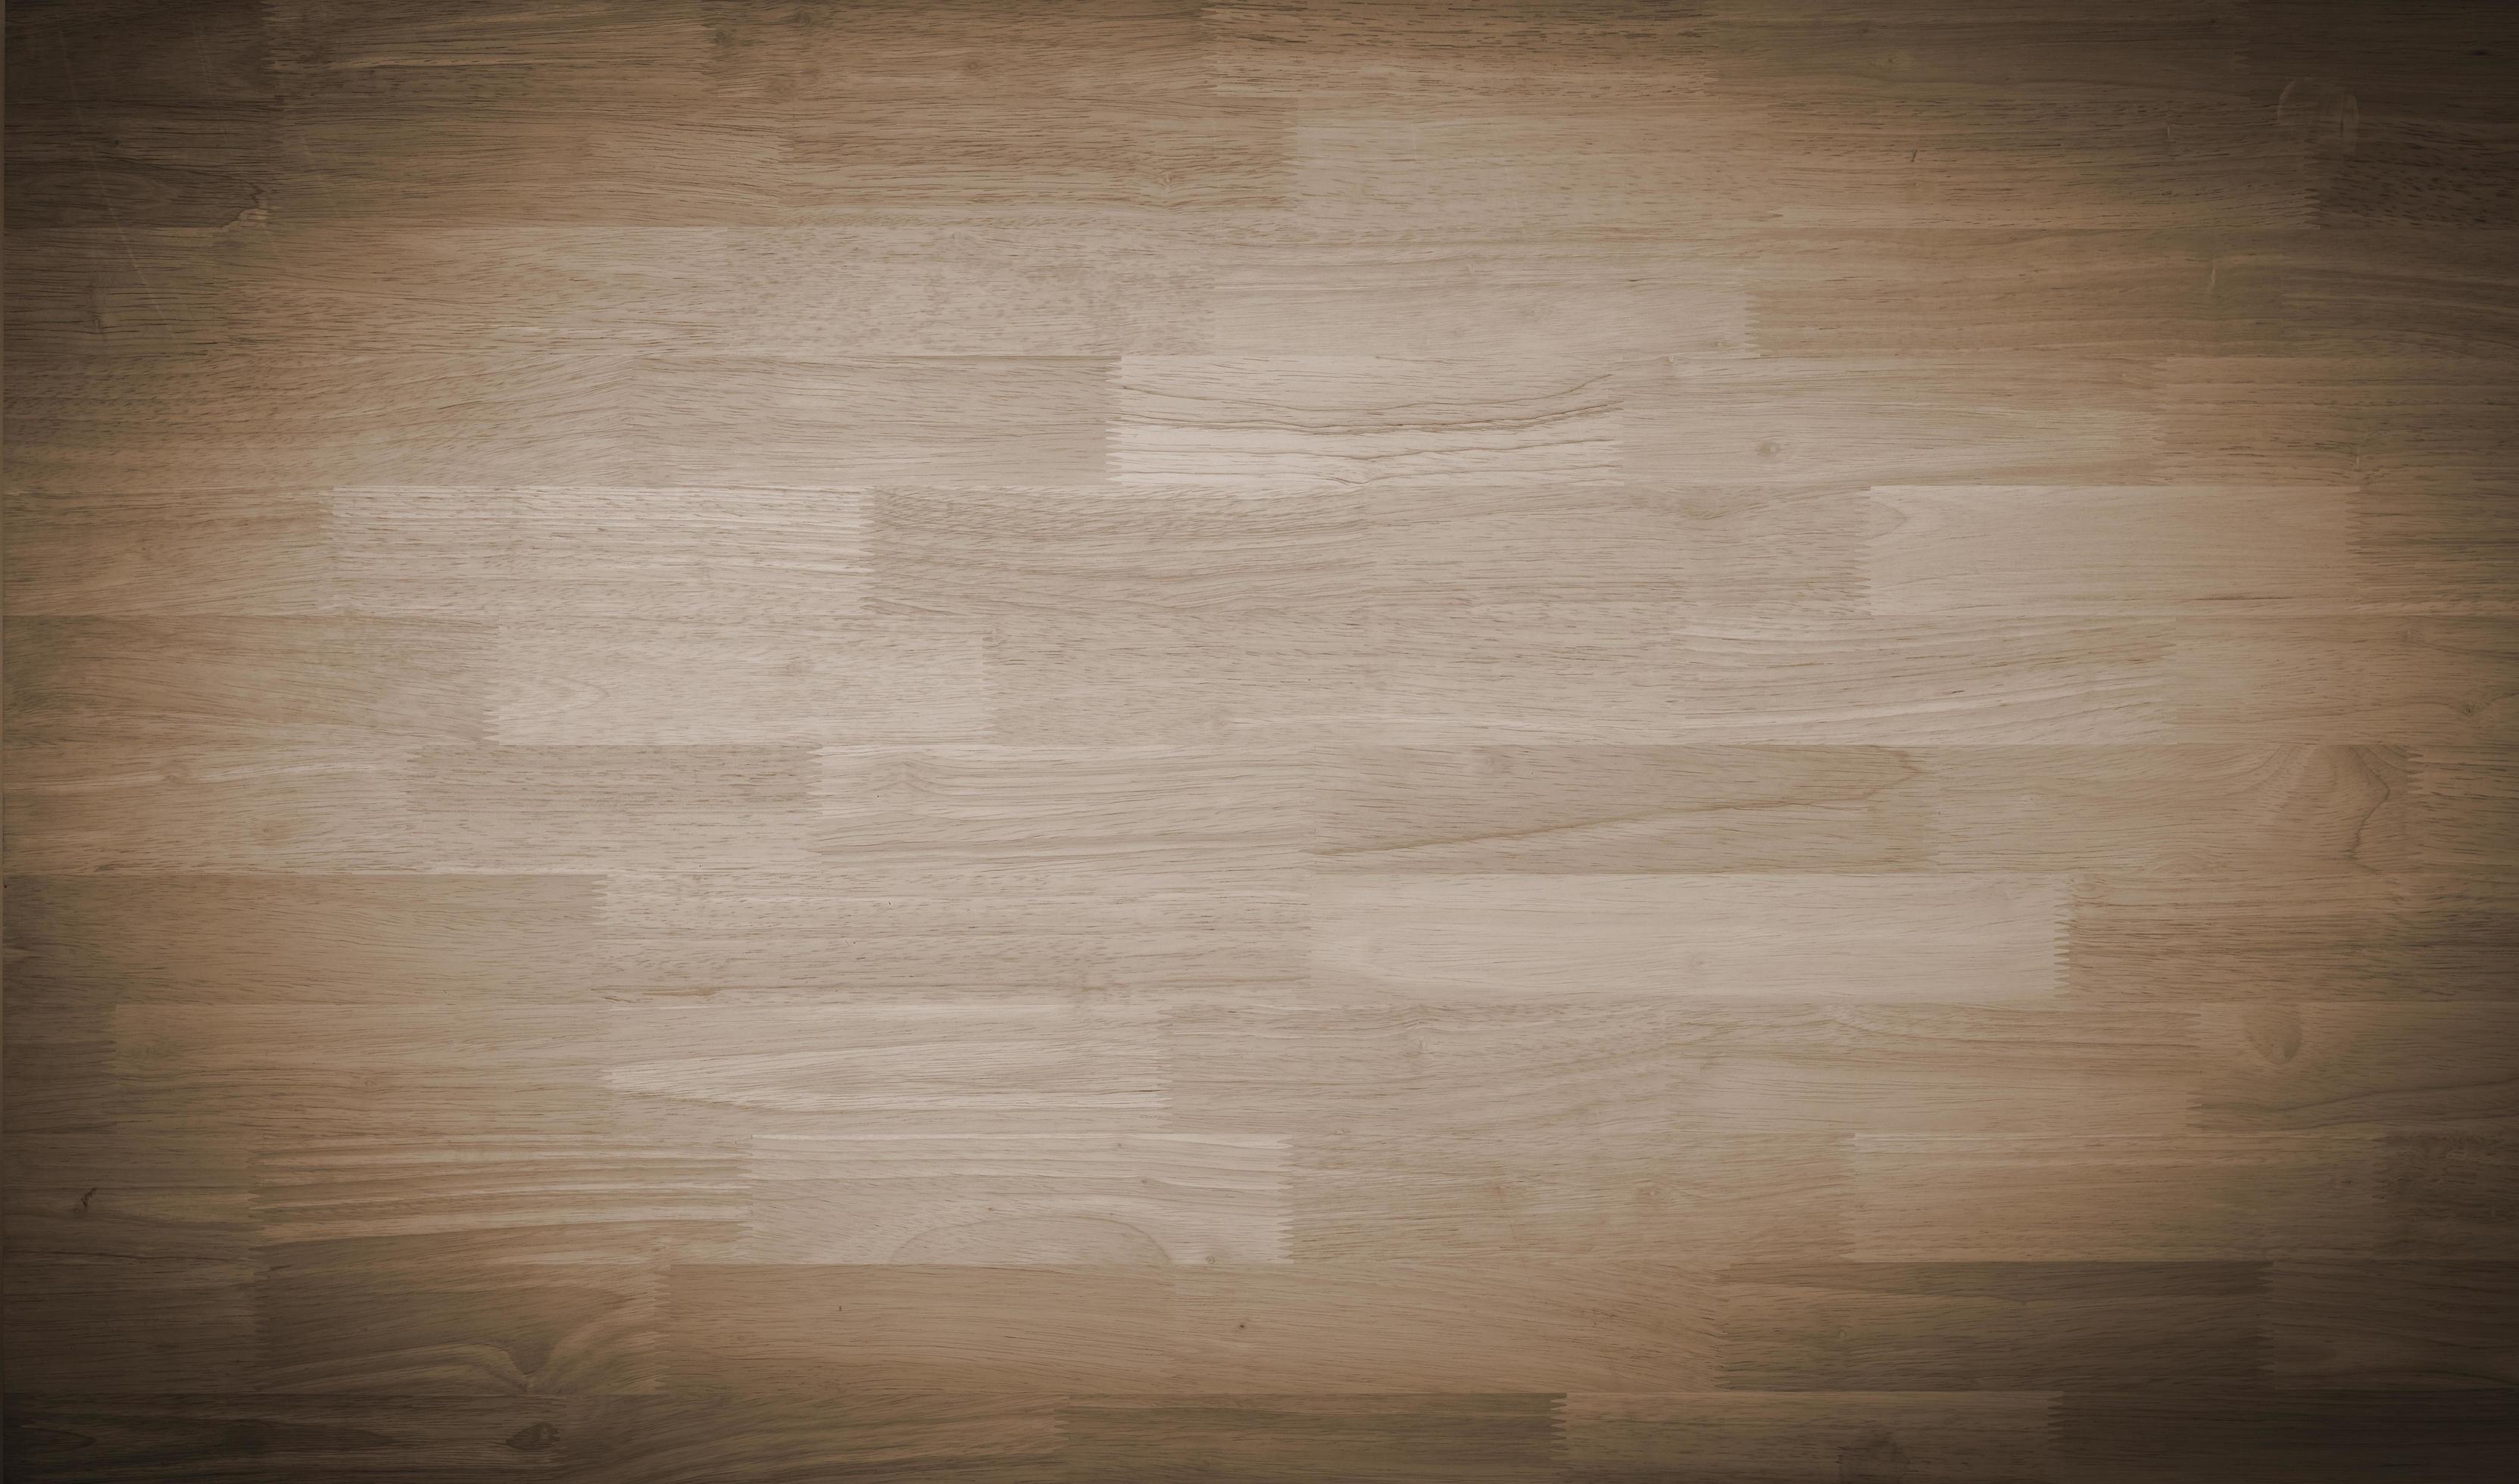 Nền gỗ màu nâu nhạt: Bức ảnh tuyệt đẹp về nền gỗ màu nâu nhạt sẽ mang lại cho bạn cảm giác ấm cúng và tinh tế. Với màu năng động nhưng không kém phần tinh tế, nó sẽ khiến cho bất kỳ không gian nào trông hoàn hảo hơn.